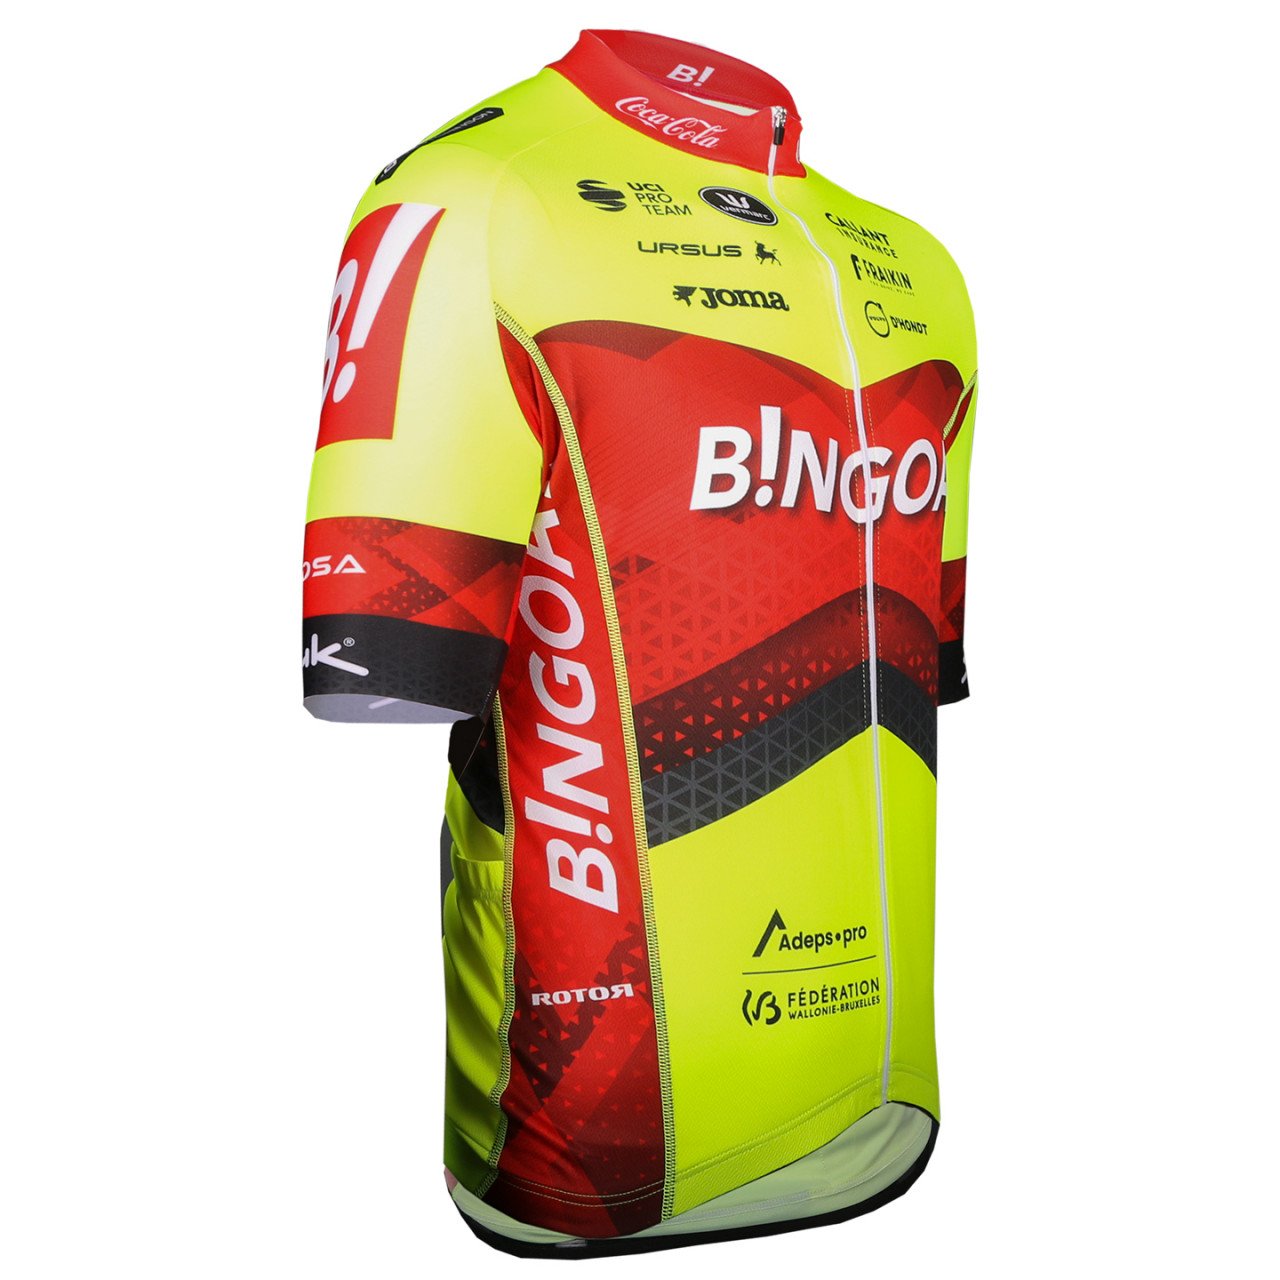 BINGOAL WALLONIE-BRUXELLES fietsshirt met korte mouwen 2024